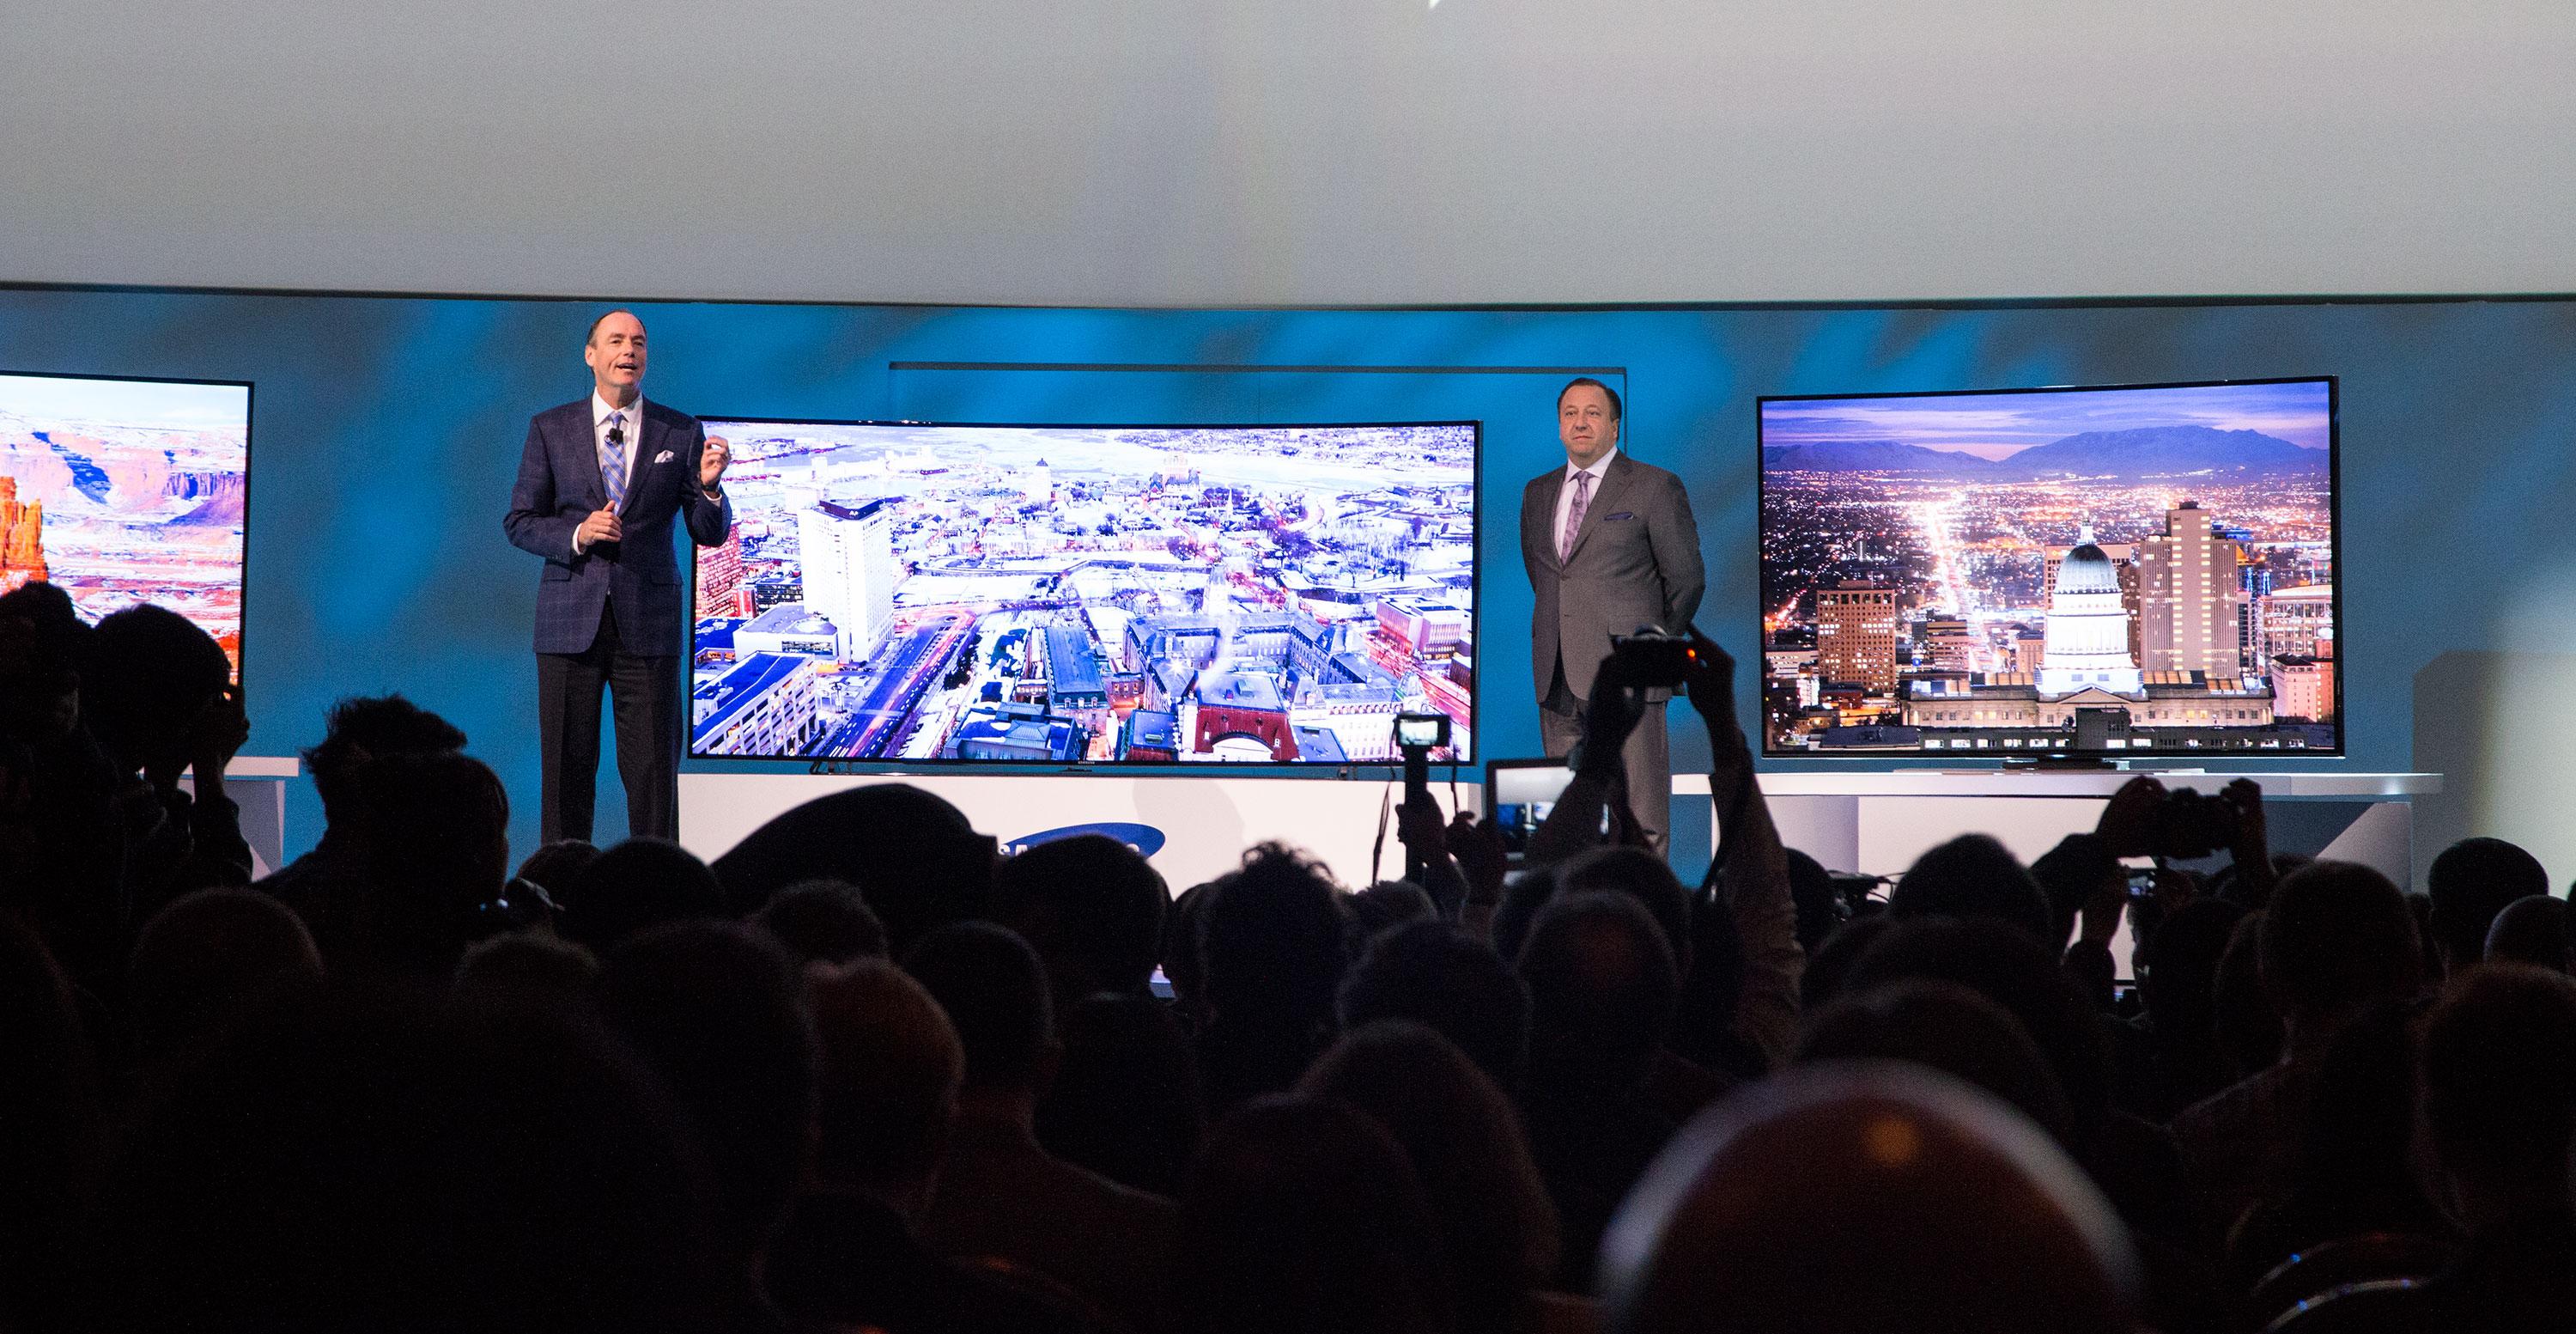 Samsung viste frem flere spennende TV-er under årets pressekonferanse.Foto: Jørgen Elton Nilsen, Hardware.no